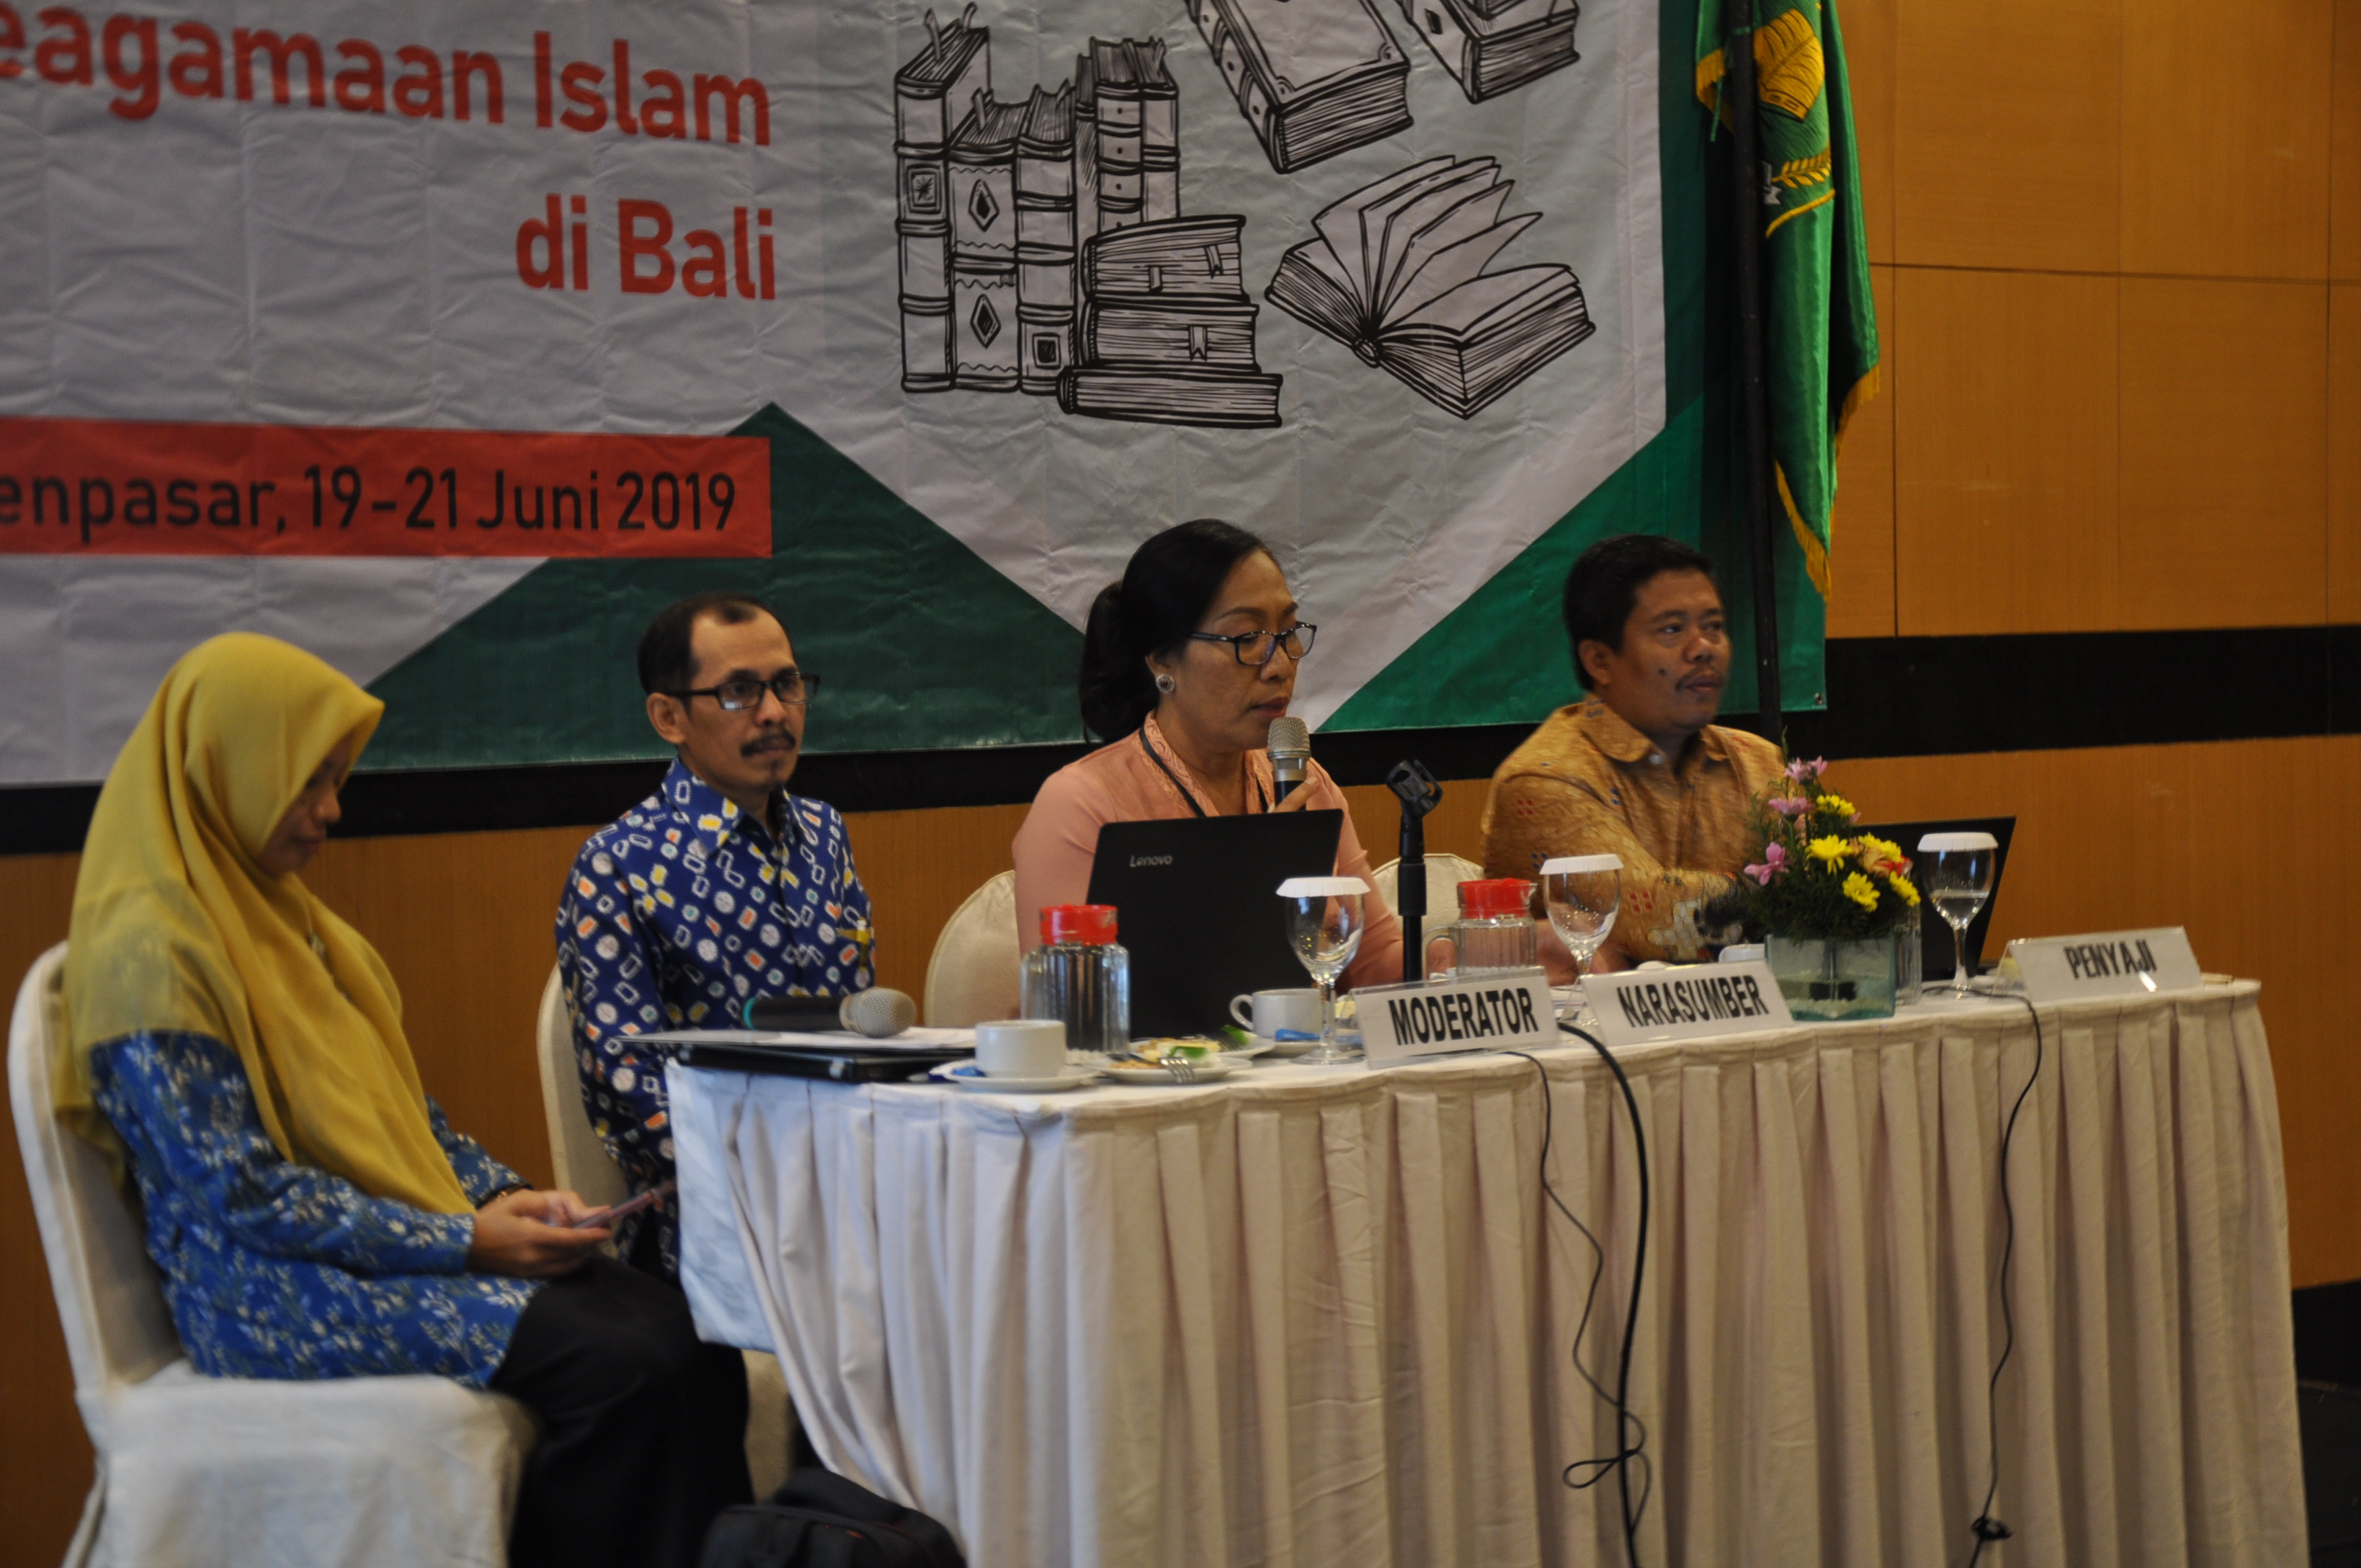 Pemaparan Hasil Penelitian – Penutupan Seminar “Inventarisasi dan DIgitalisasi Naskah Keagamaan Islam di Bali